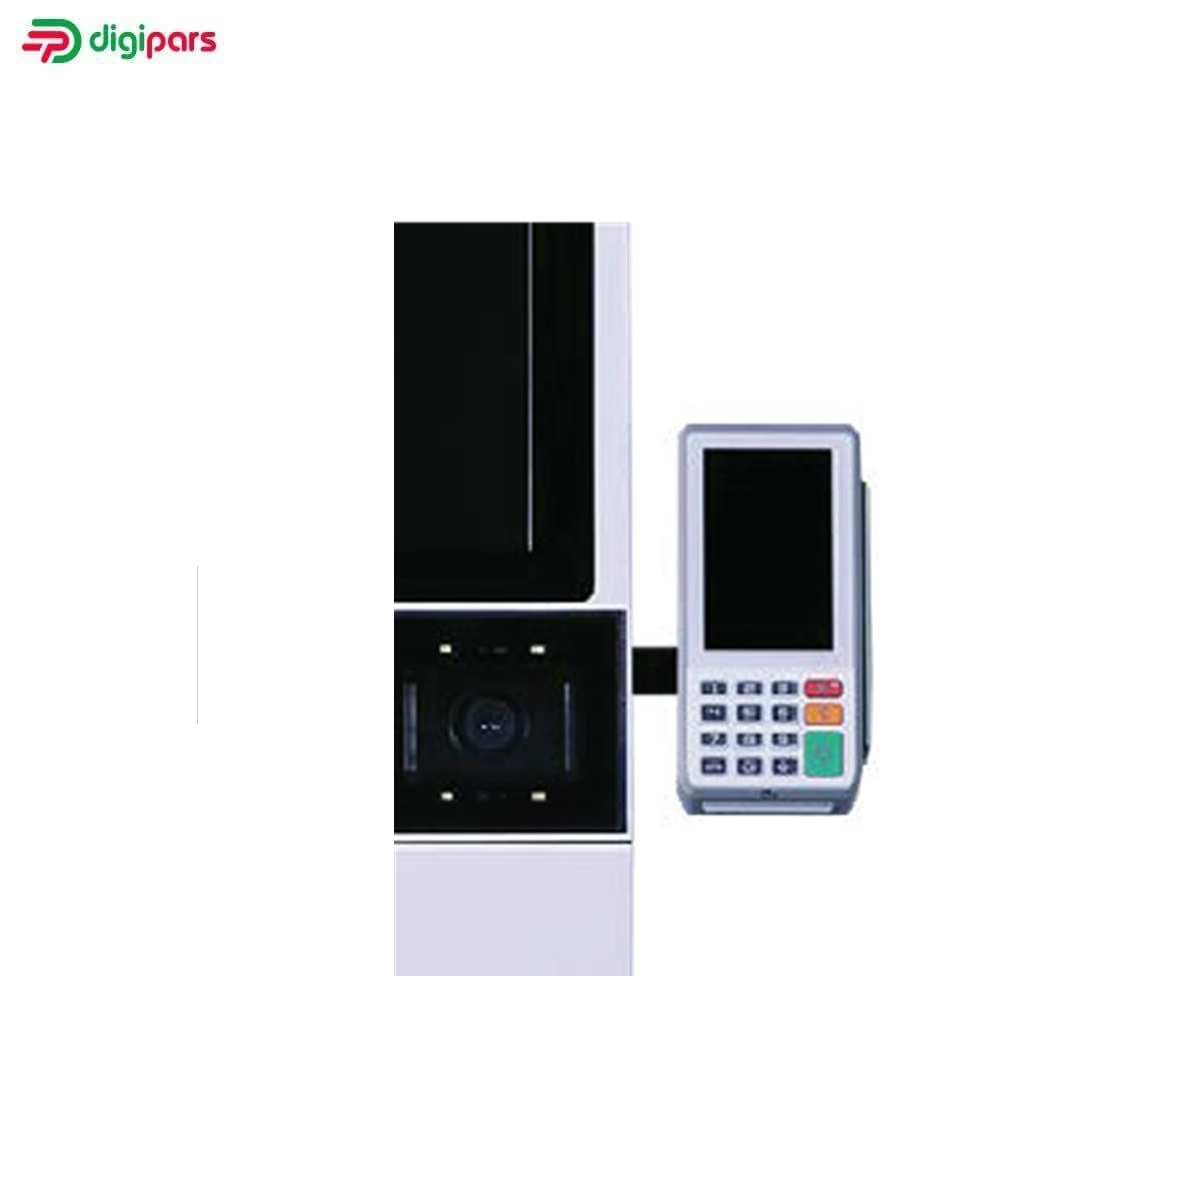 سیستم-خودپرداز-فروشگاهی-REGOR M21-digipars.co-0